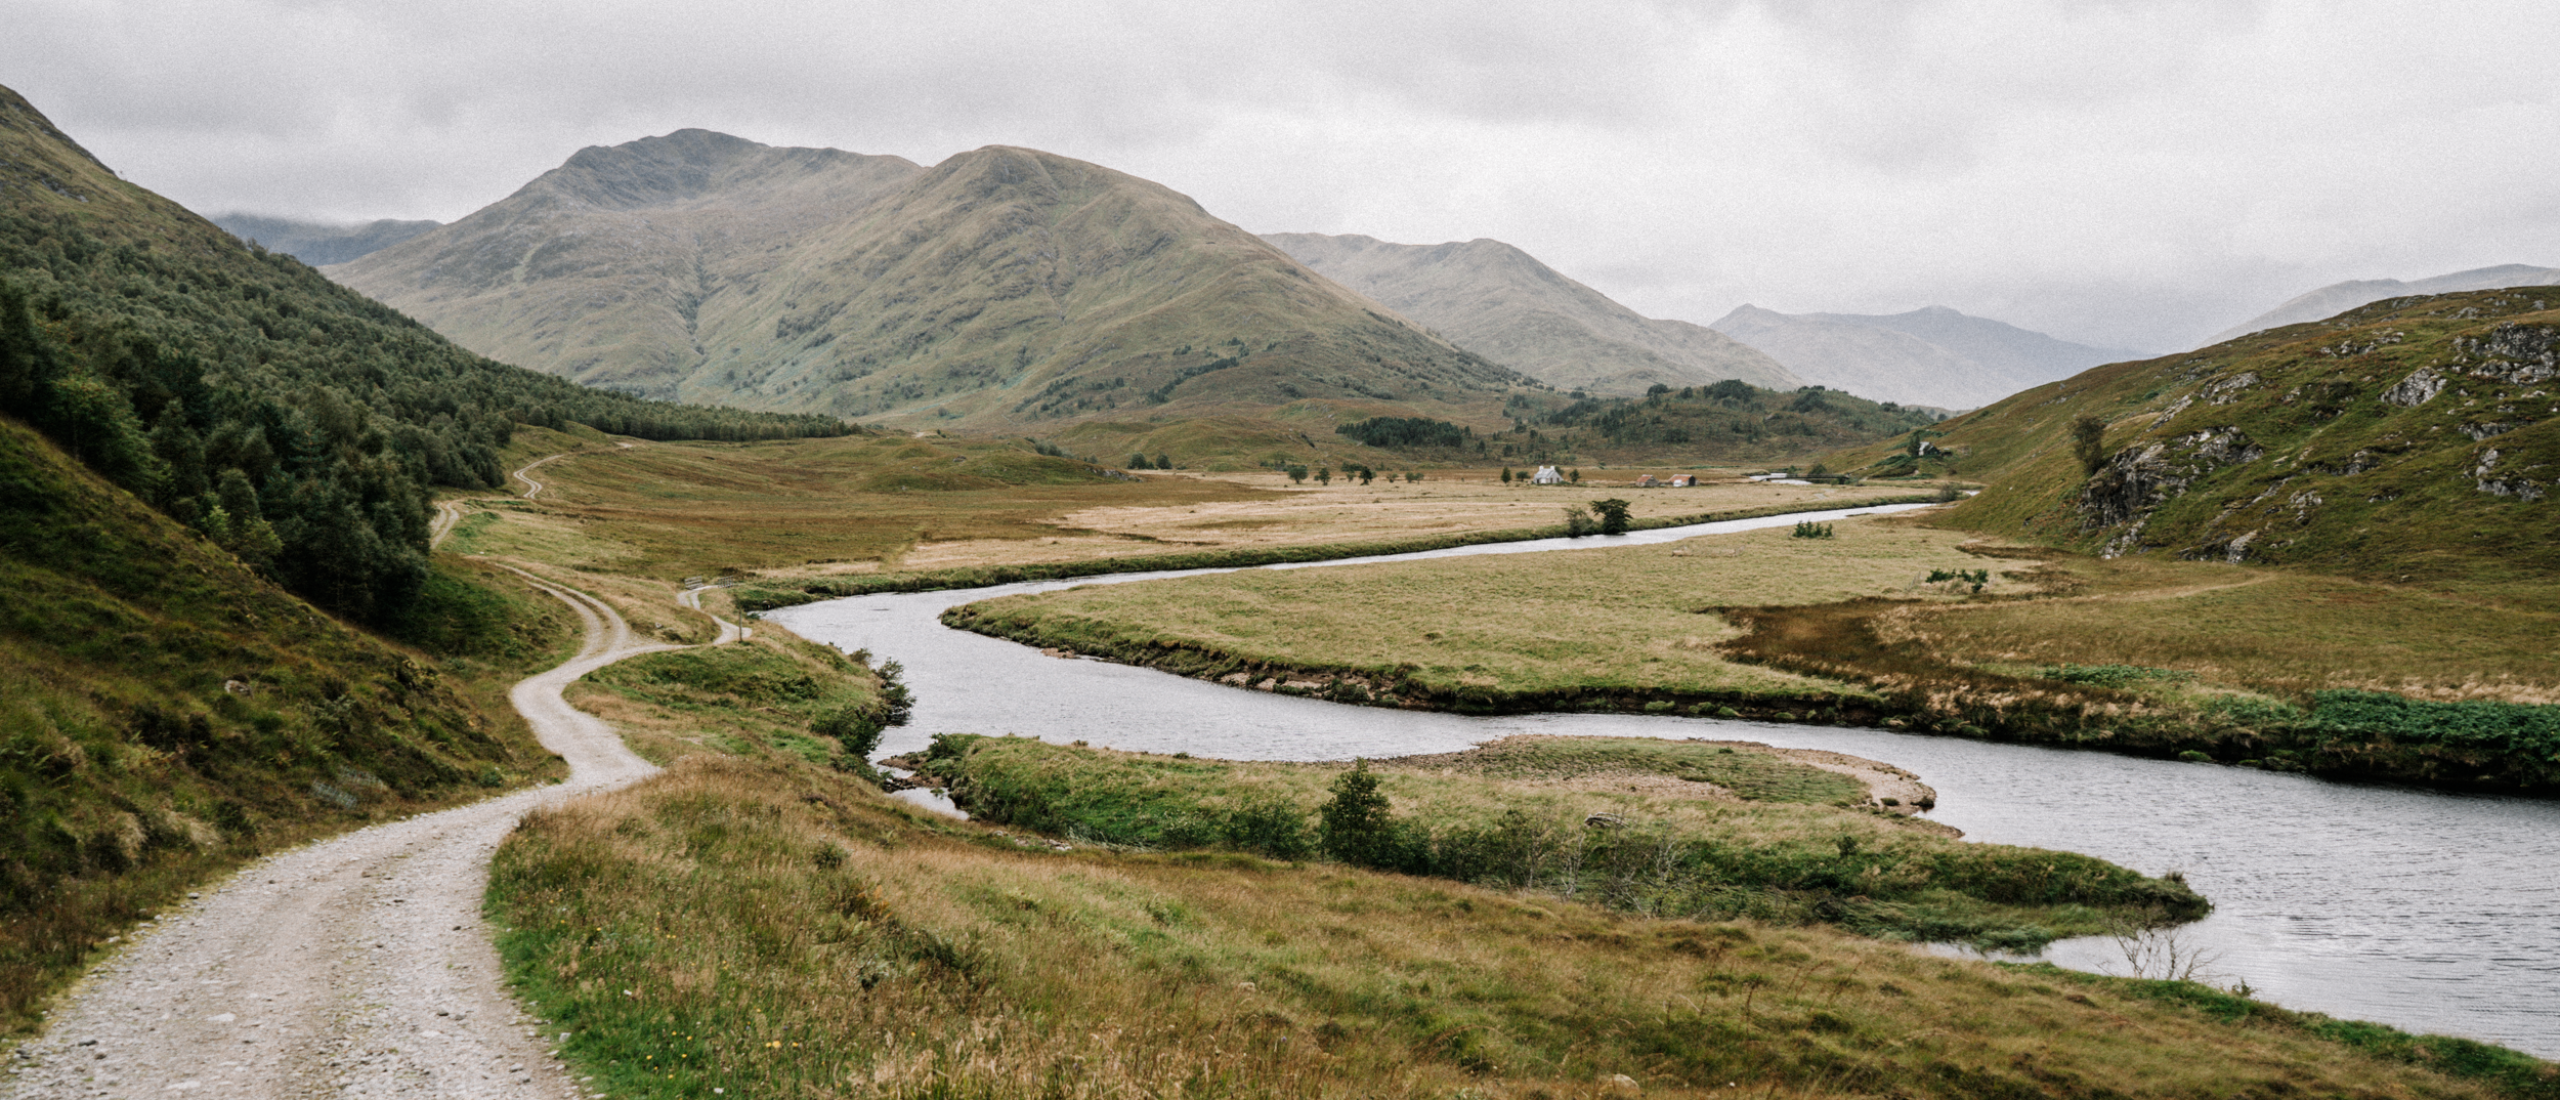 De Affric Kintail Way: door Schotlands mooiste vallei